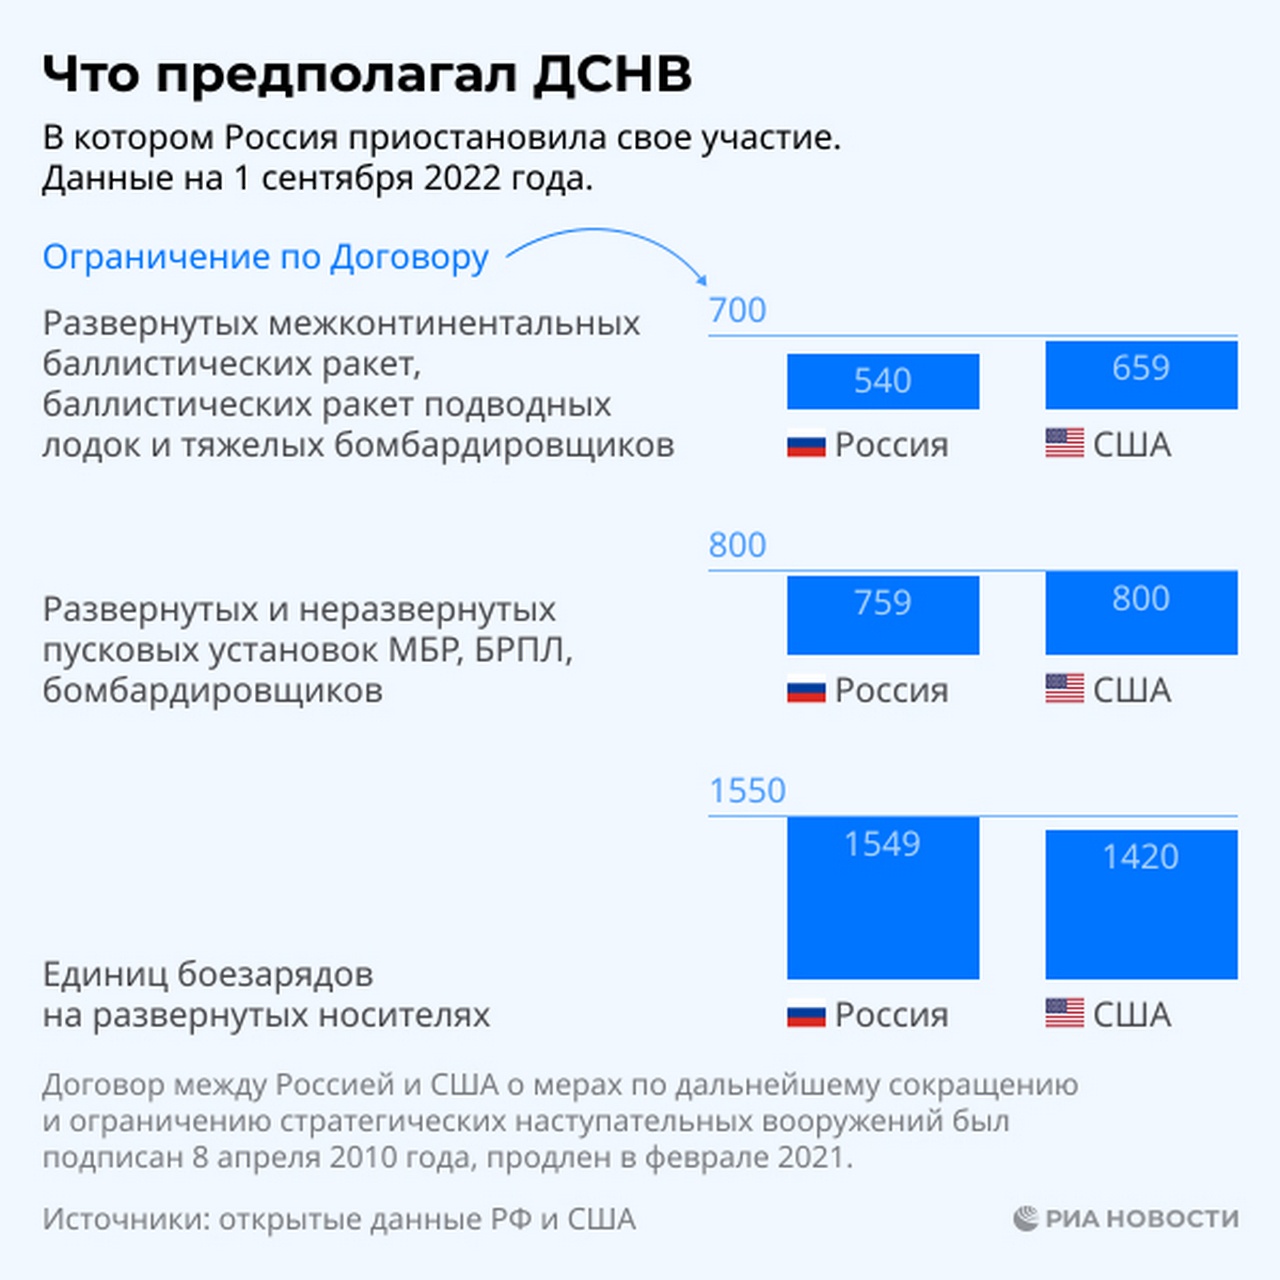 Что предполагал Договор о мерах по дальнейшему сокращению и ограничению стратегических наступательных вооружений (ДСНВ), в котором Россия приостановила своё участие. Данные на 1 сентября 2022 года.